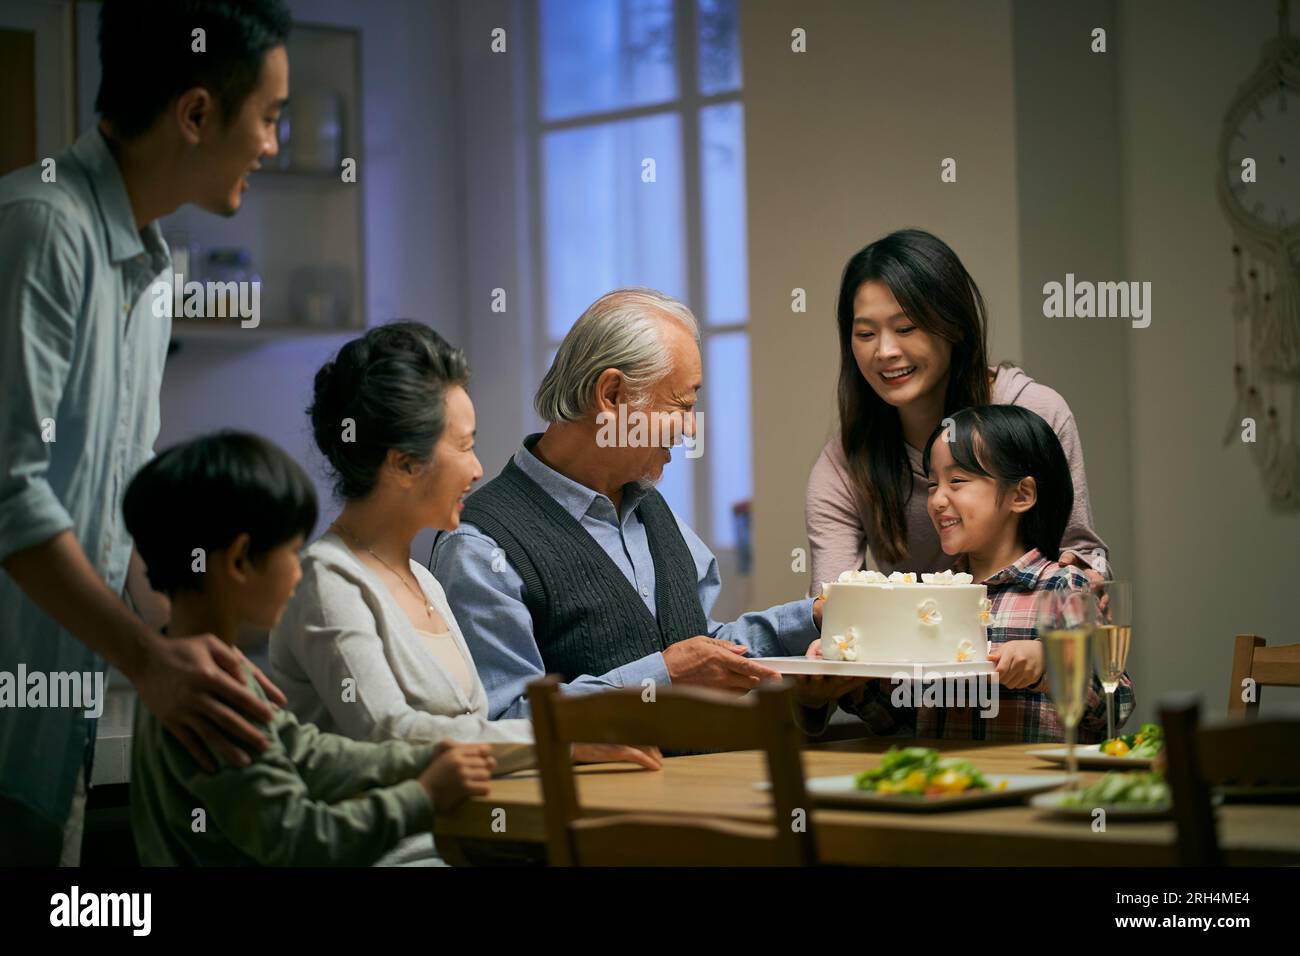 famiglia asiatica di tre generazioni che si riunisce a casa per celebrare l'anniversario del matrimonio della coppia anziana Foto Stock